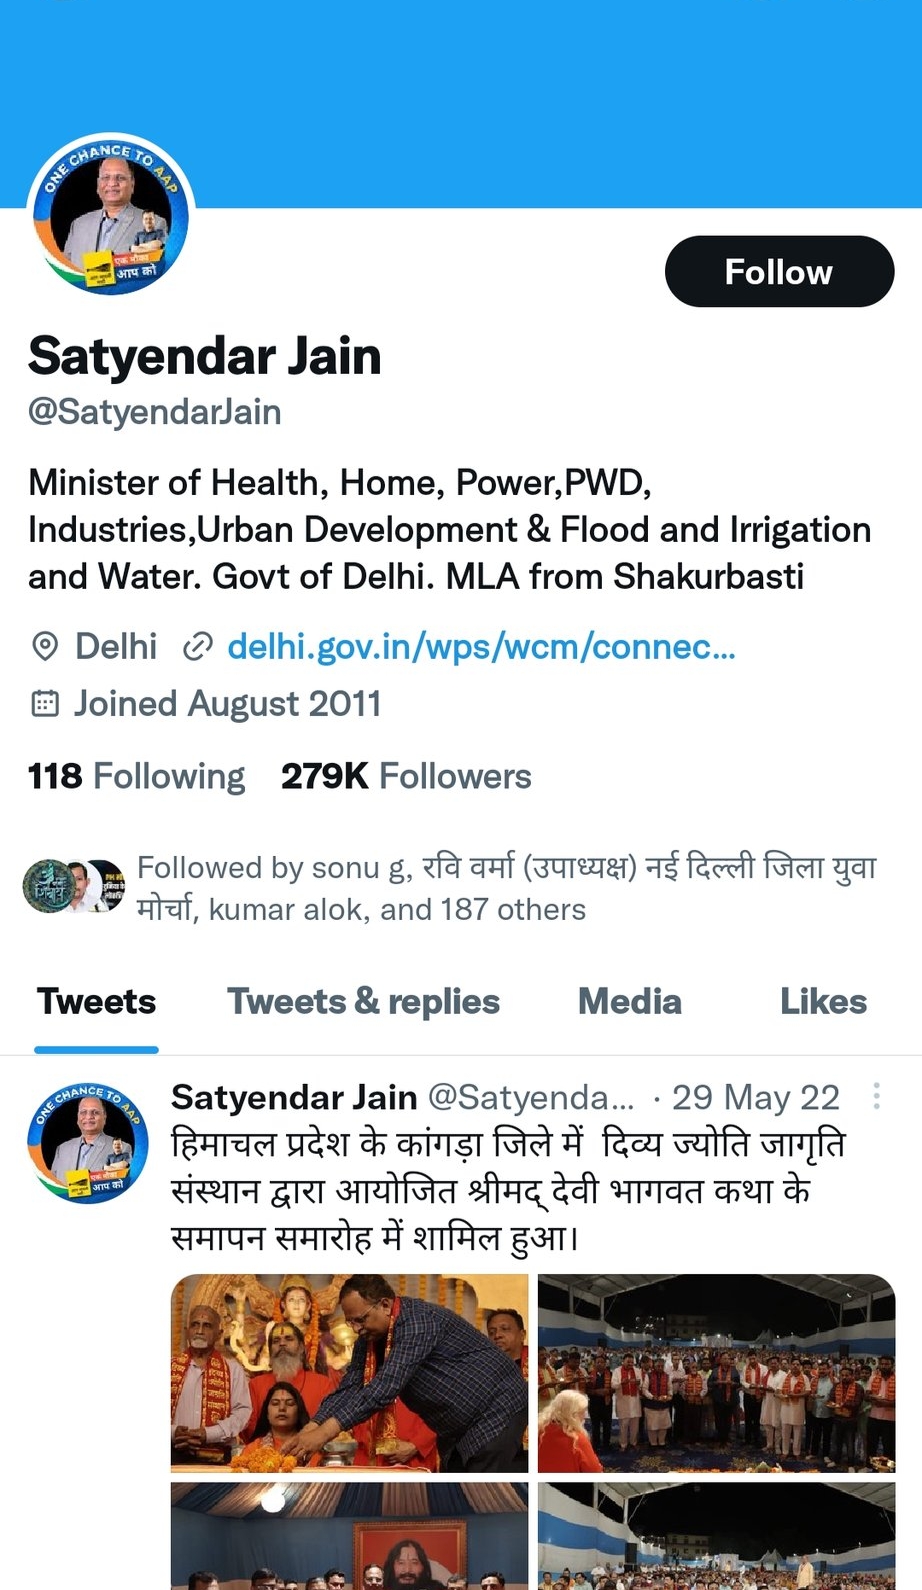 Satyendra Jain Twitter Account